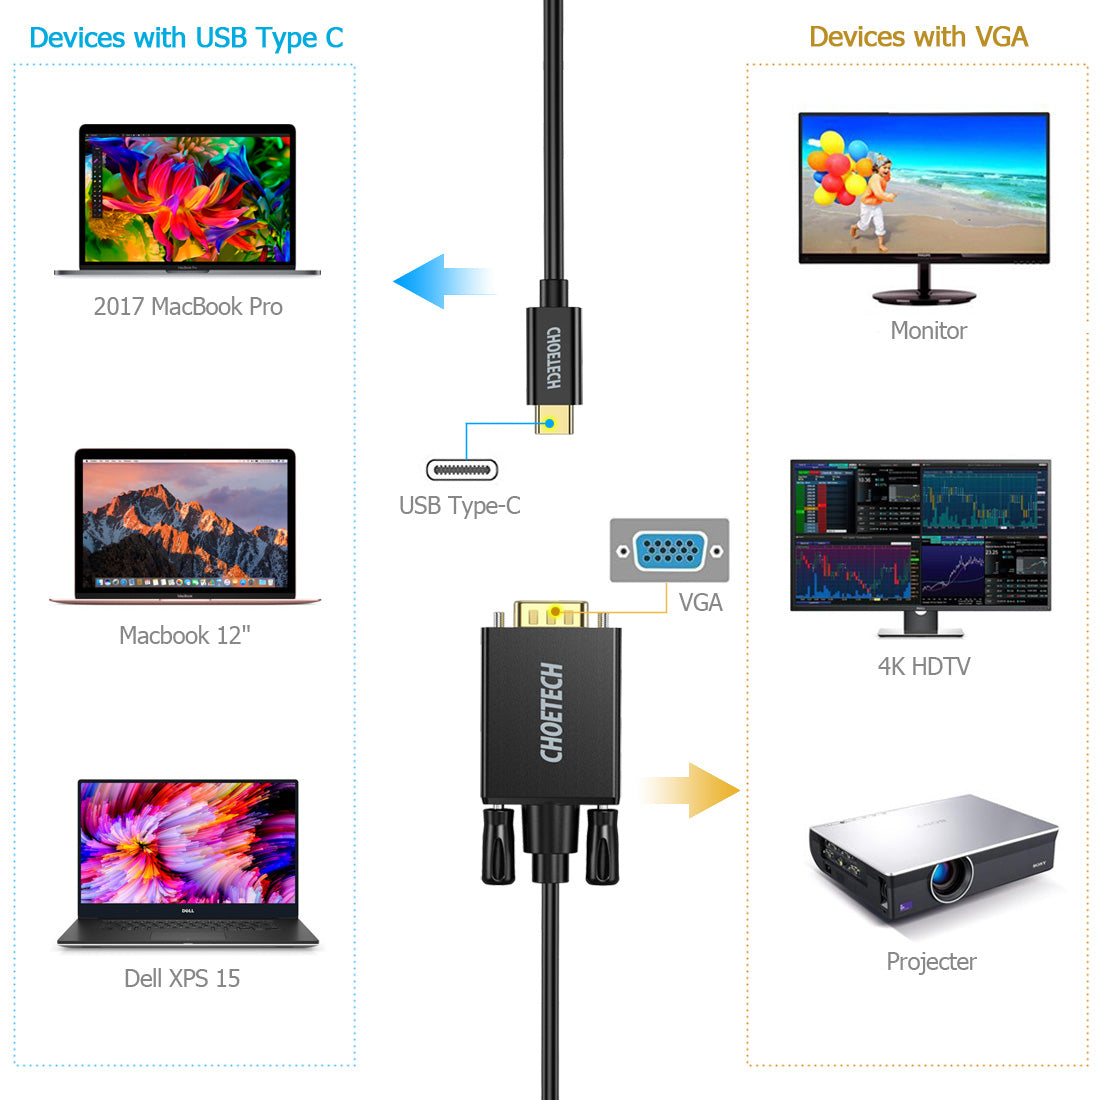 XCV-1801BK CHOETECH Cable USB C a VGA 1.8M